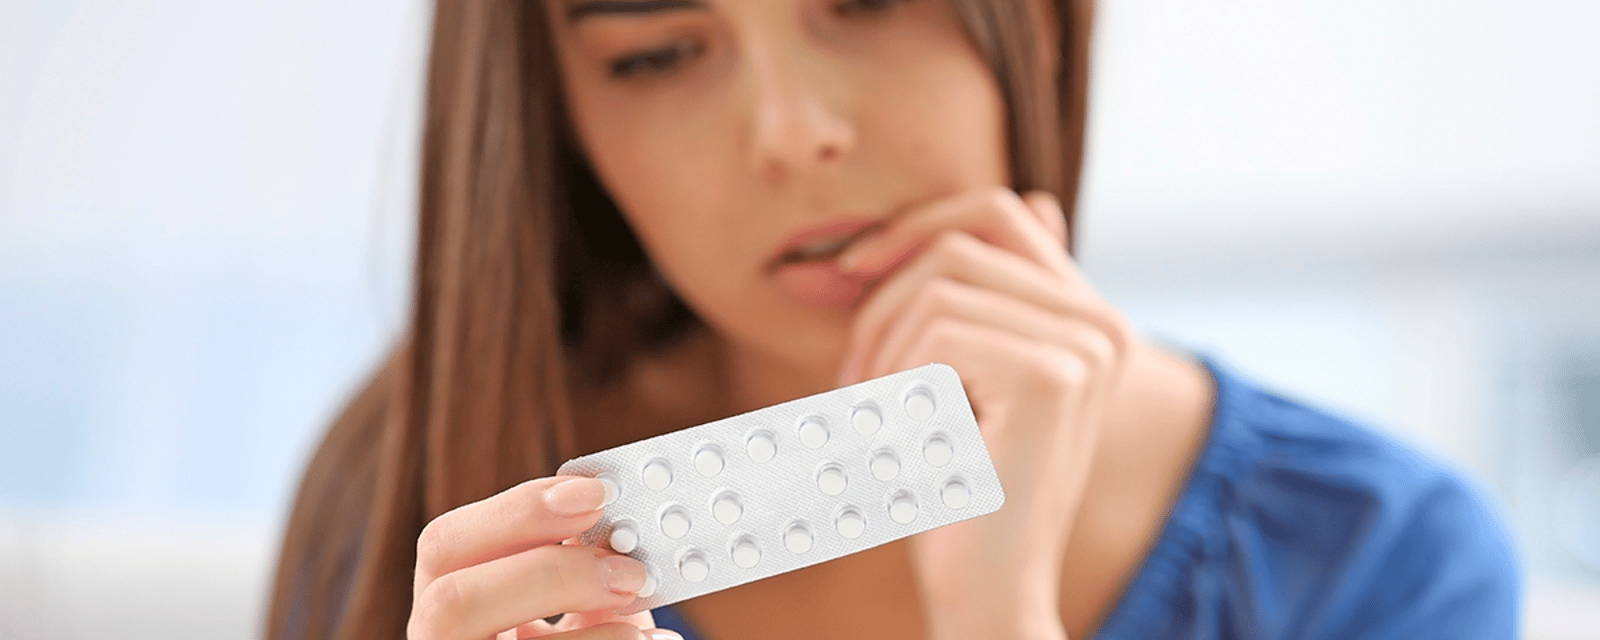 Santé Canada fait une importante mise en garde concernant des pilules contraceptives